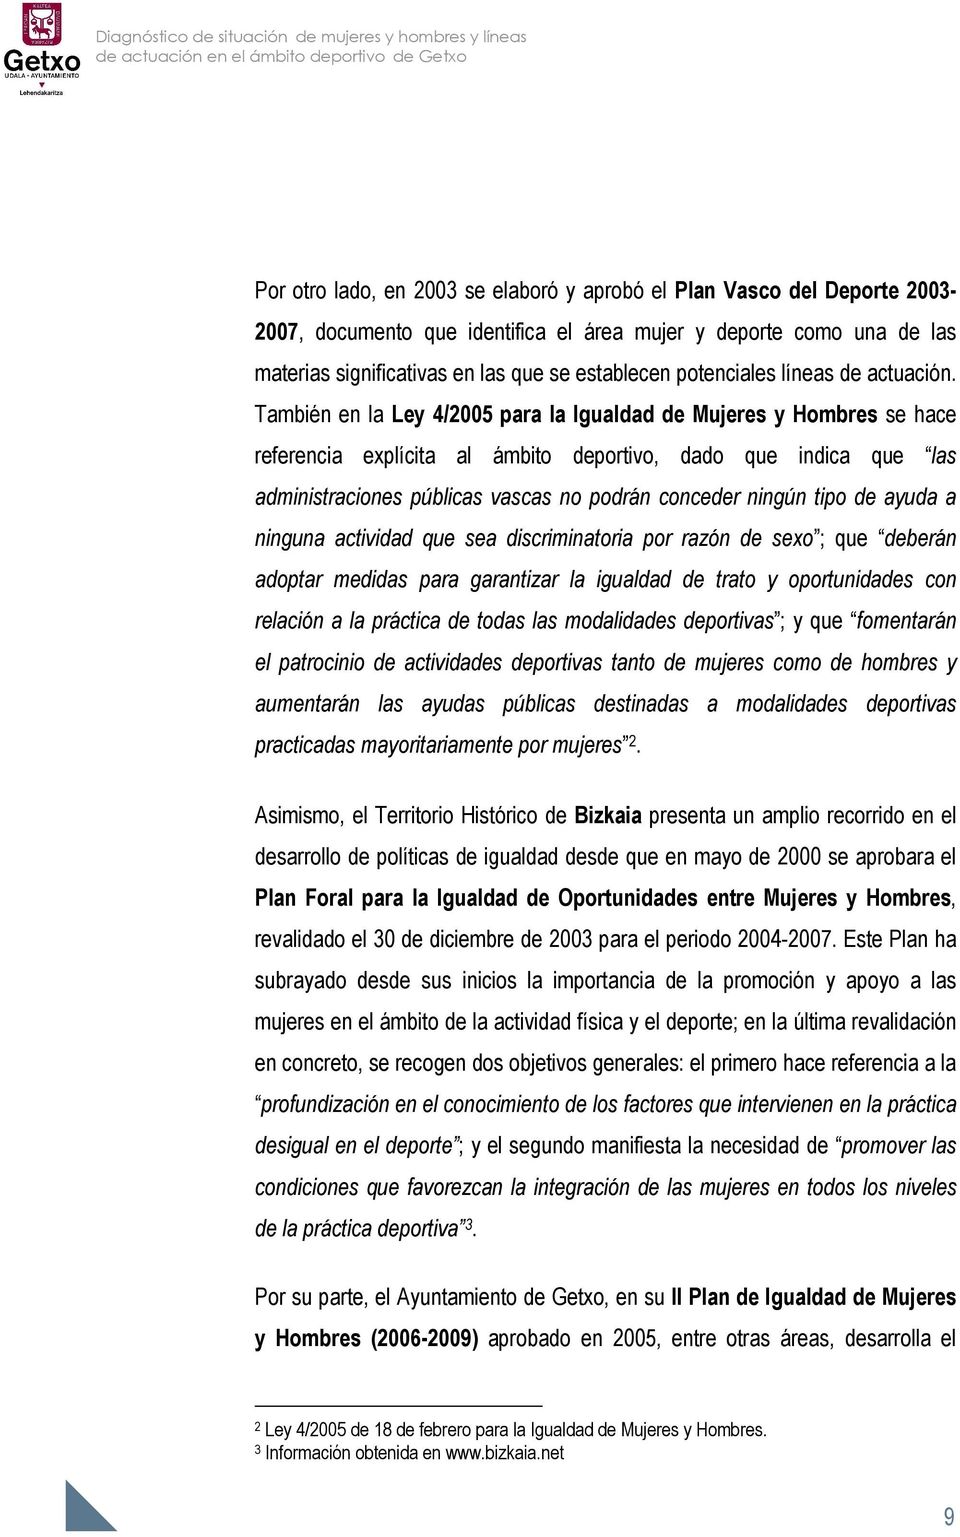 También en la Ley 4/2005 para la Igualdad de Mujeres y Hombres se hace referencia explícita al ámbito deportivo, dado que indica que las administraciones públicas vascas no podrán conceder ningún